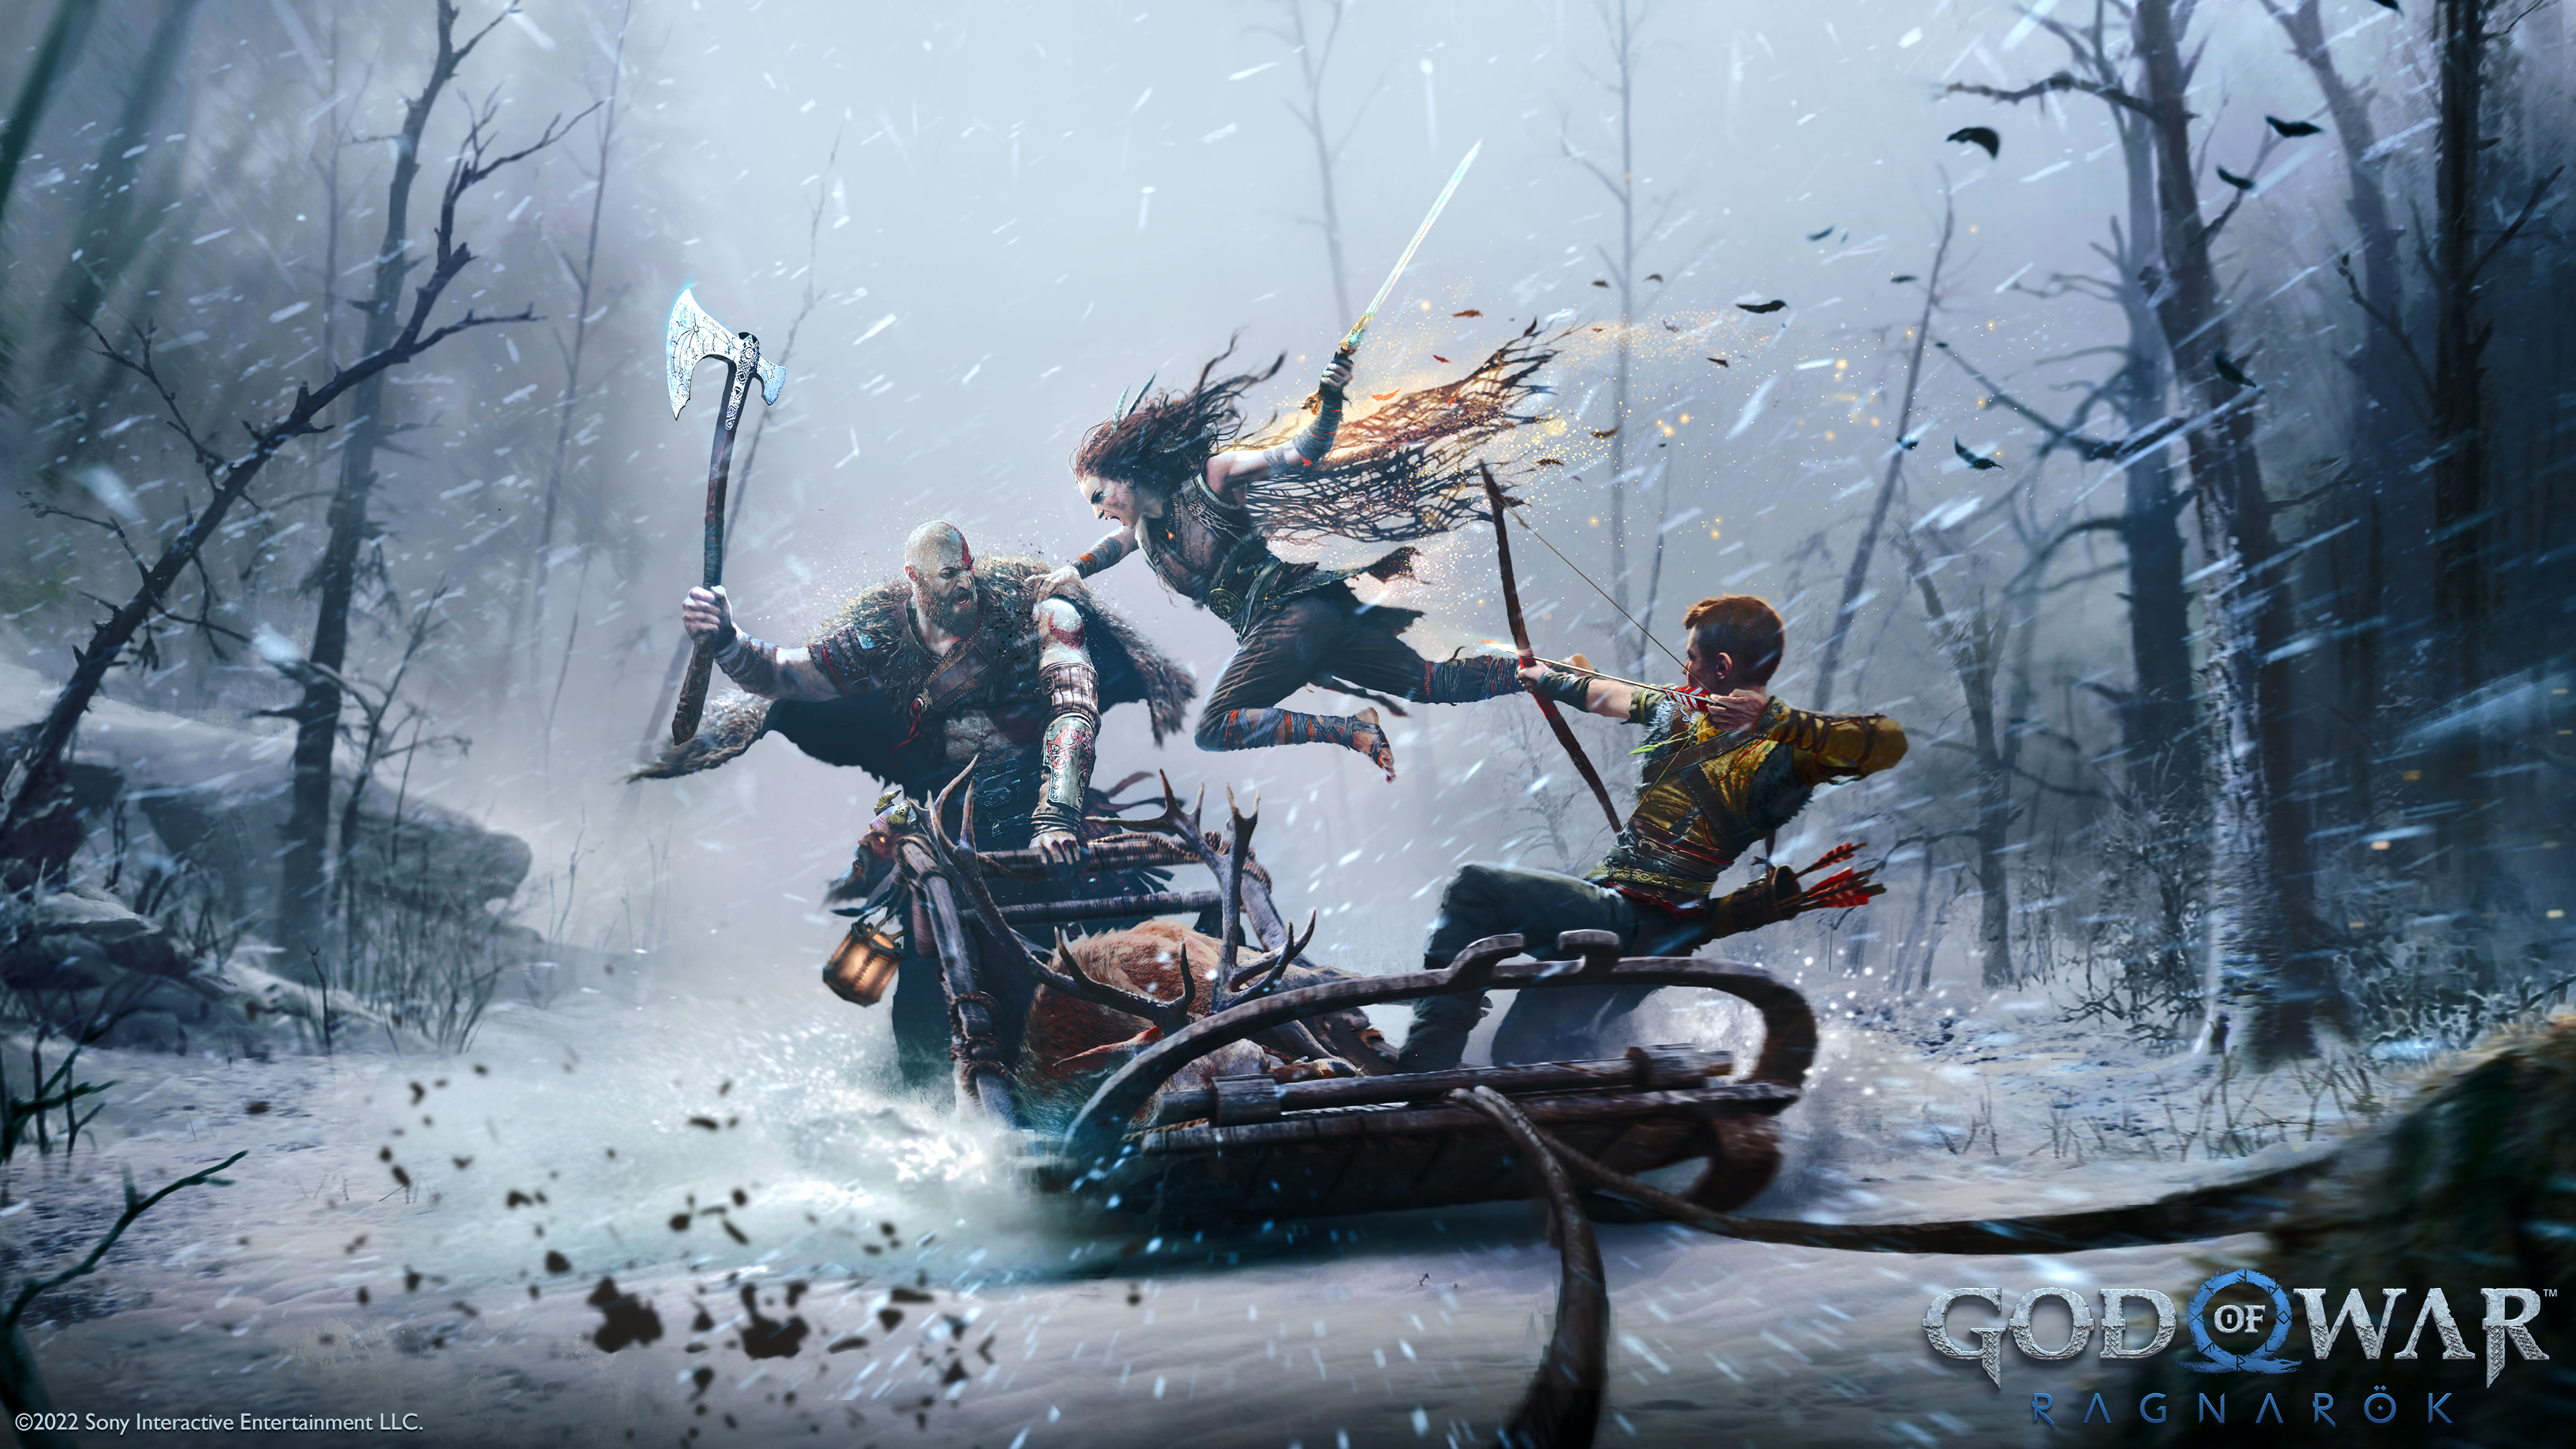 4K God of War: Ragnarök Wallpaper and Background Image